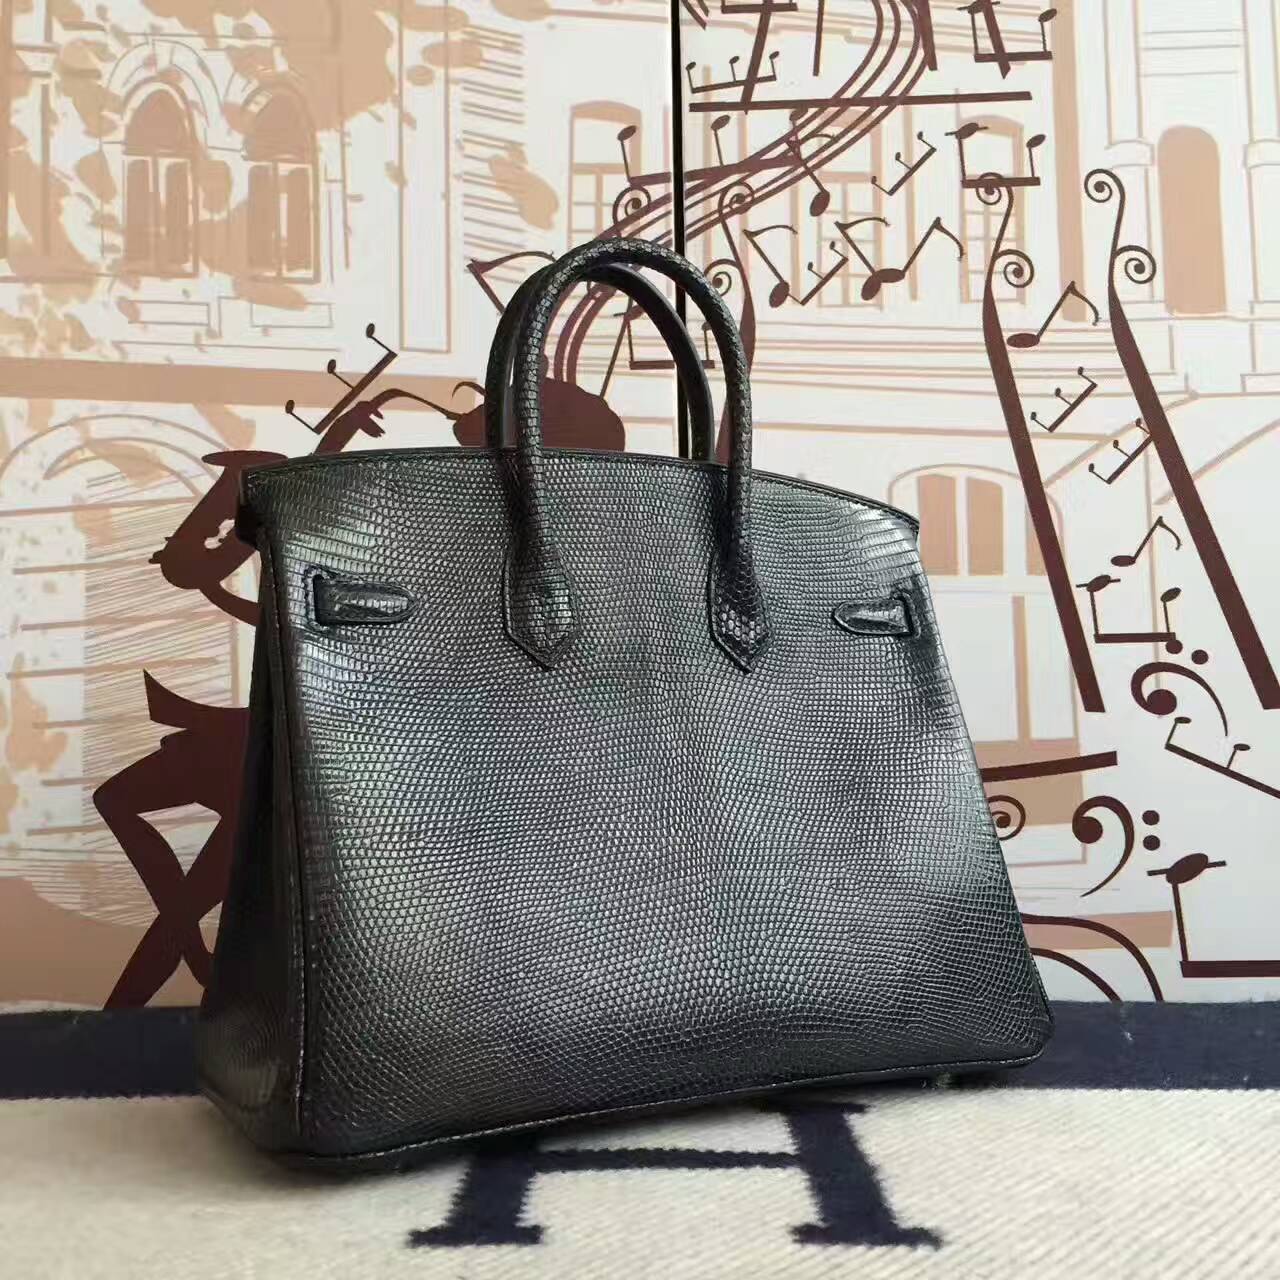 Cheap Hermes CK89 Black Lizard Shiny Leather  Birkin Bag 25cm